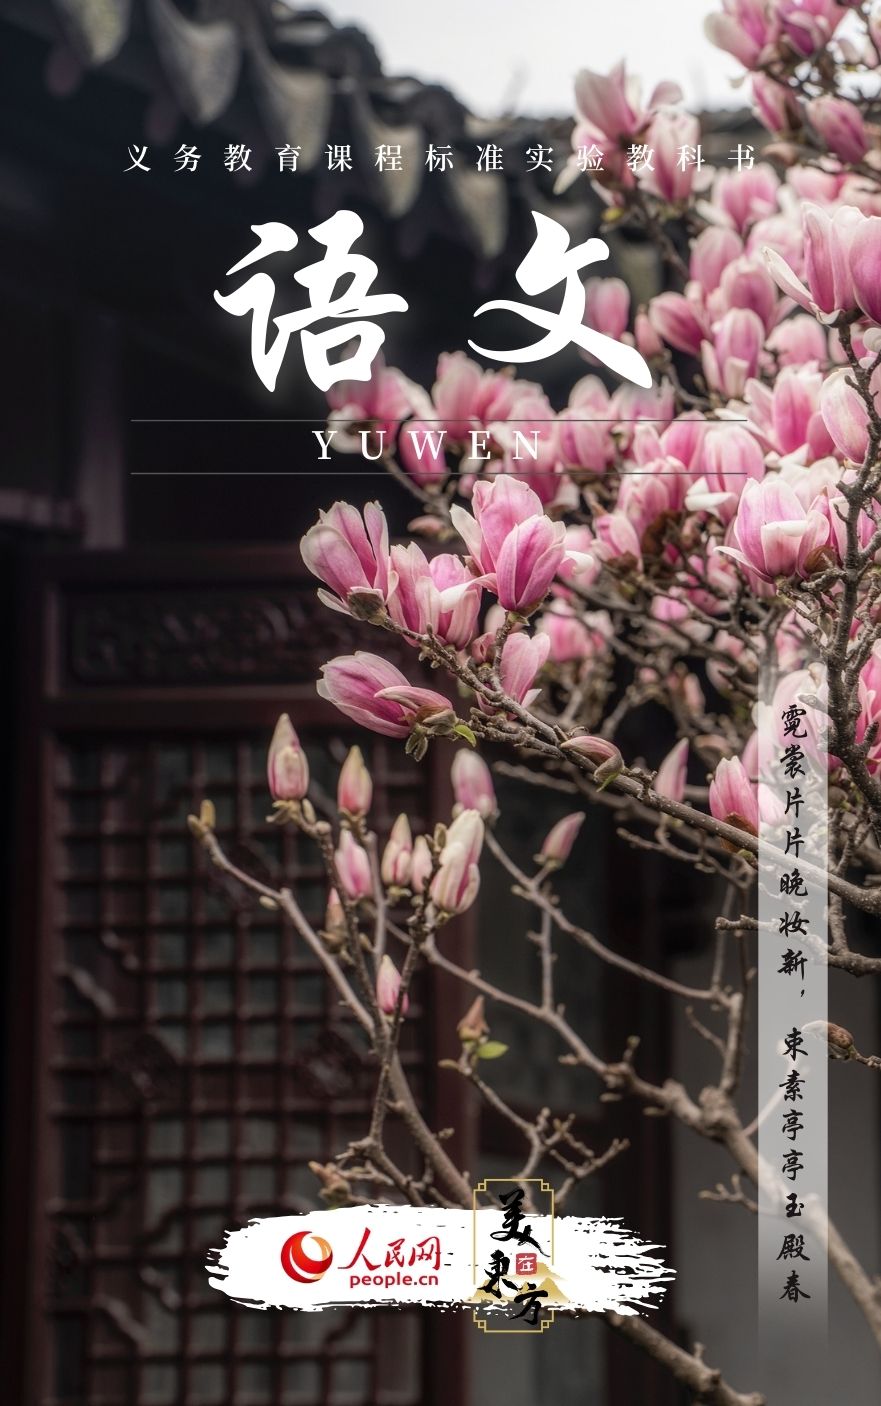 江苏苏州网师园玉兰一树繁花迎春来。